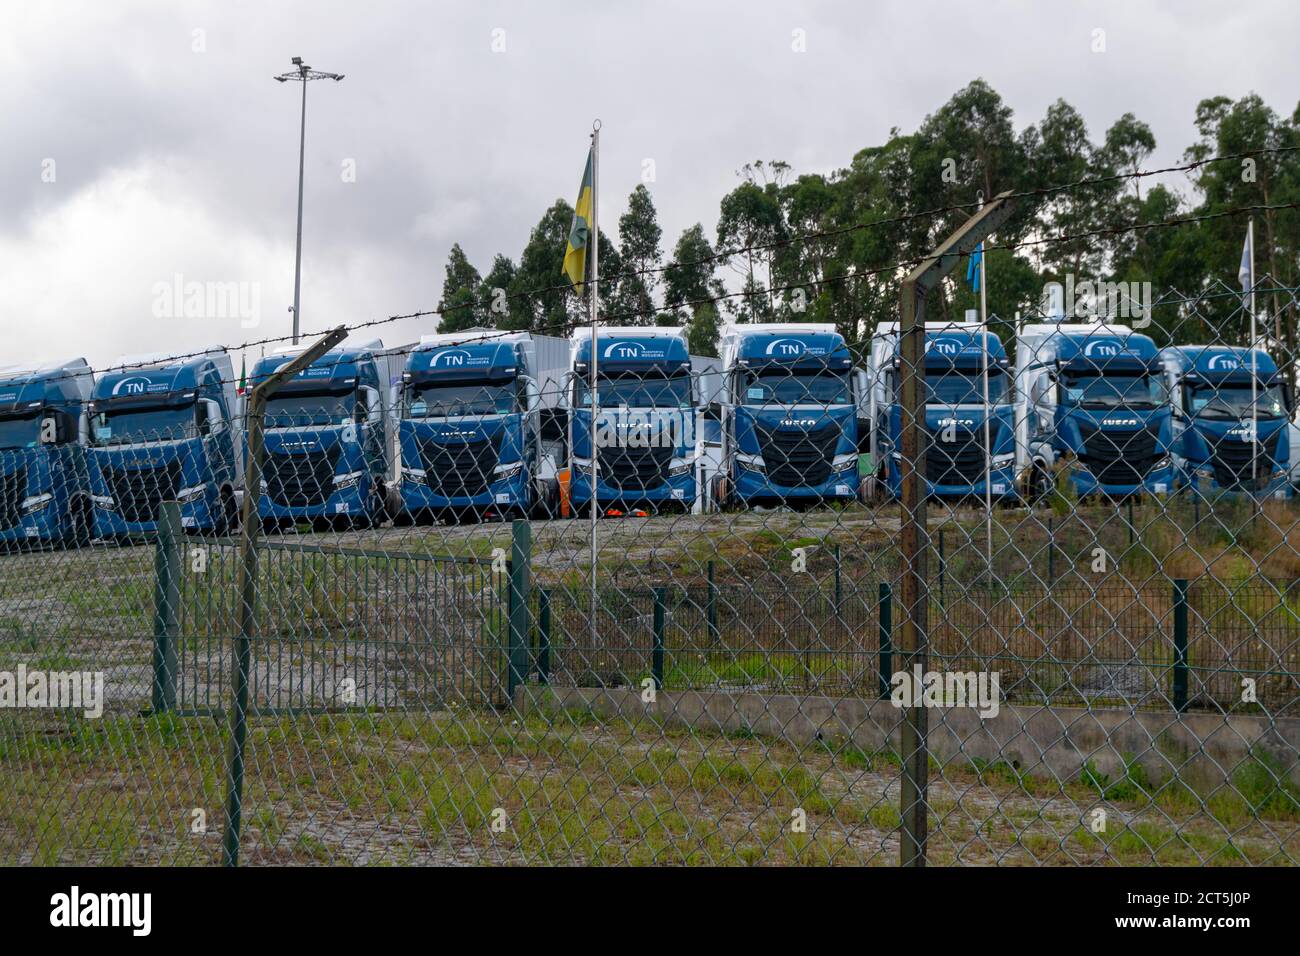 Les camions Iveco sont garés en attendant que la marchandise soit transportée ou à destination être vendu aux compagnies de transport Banque D'Images